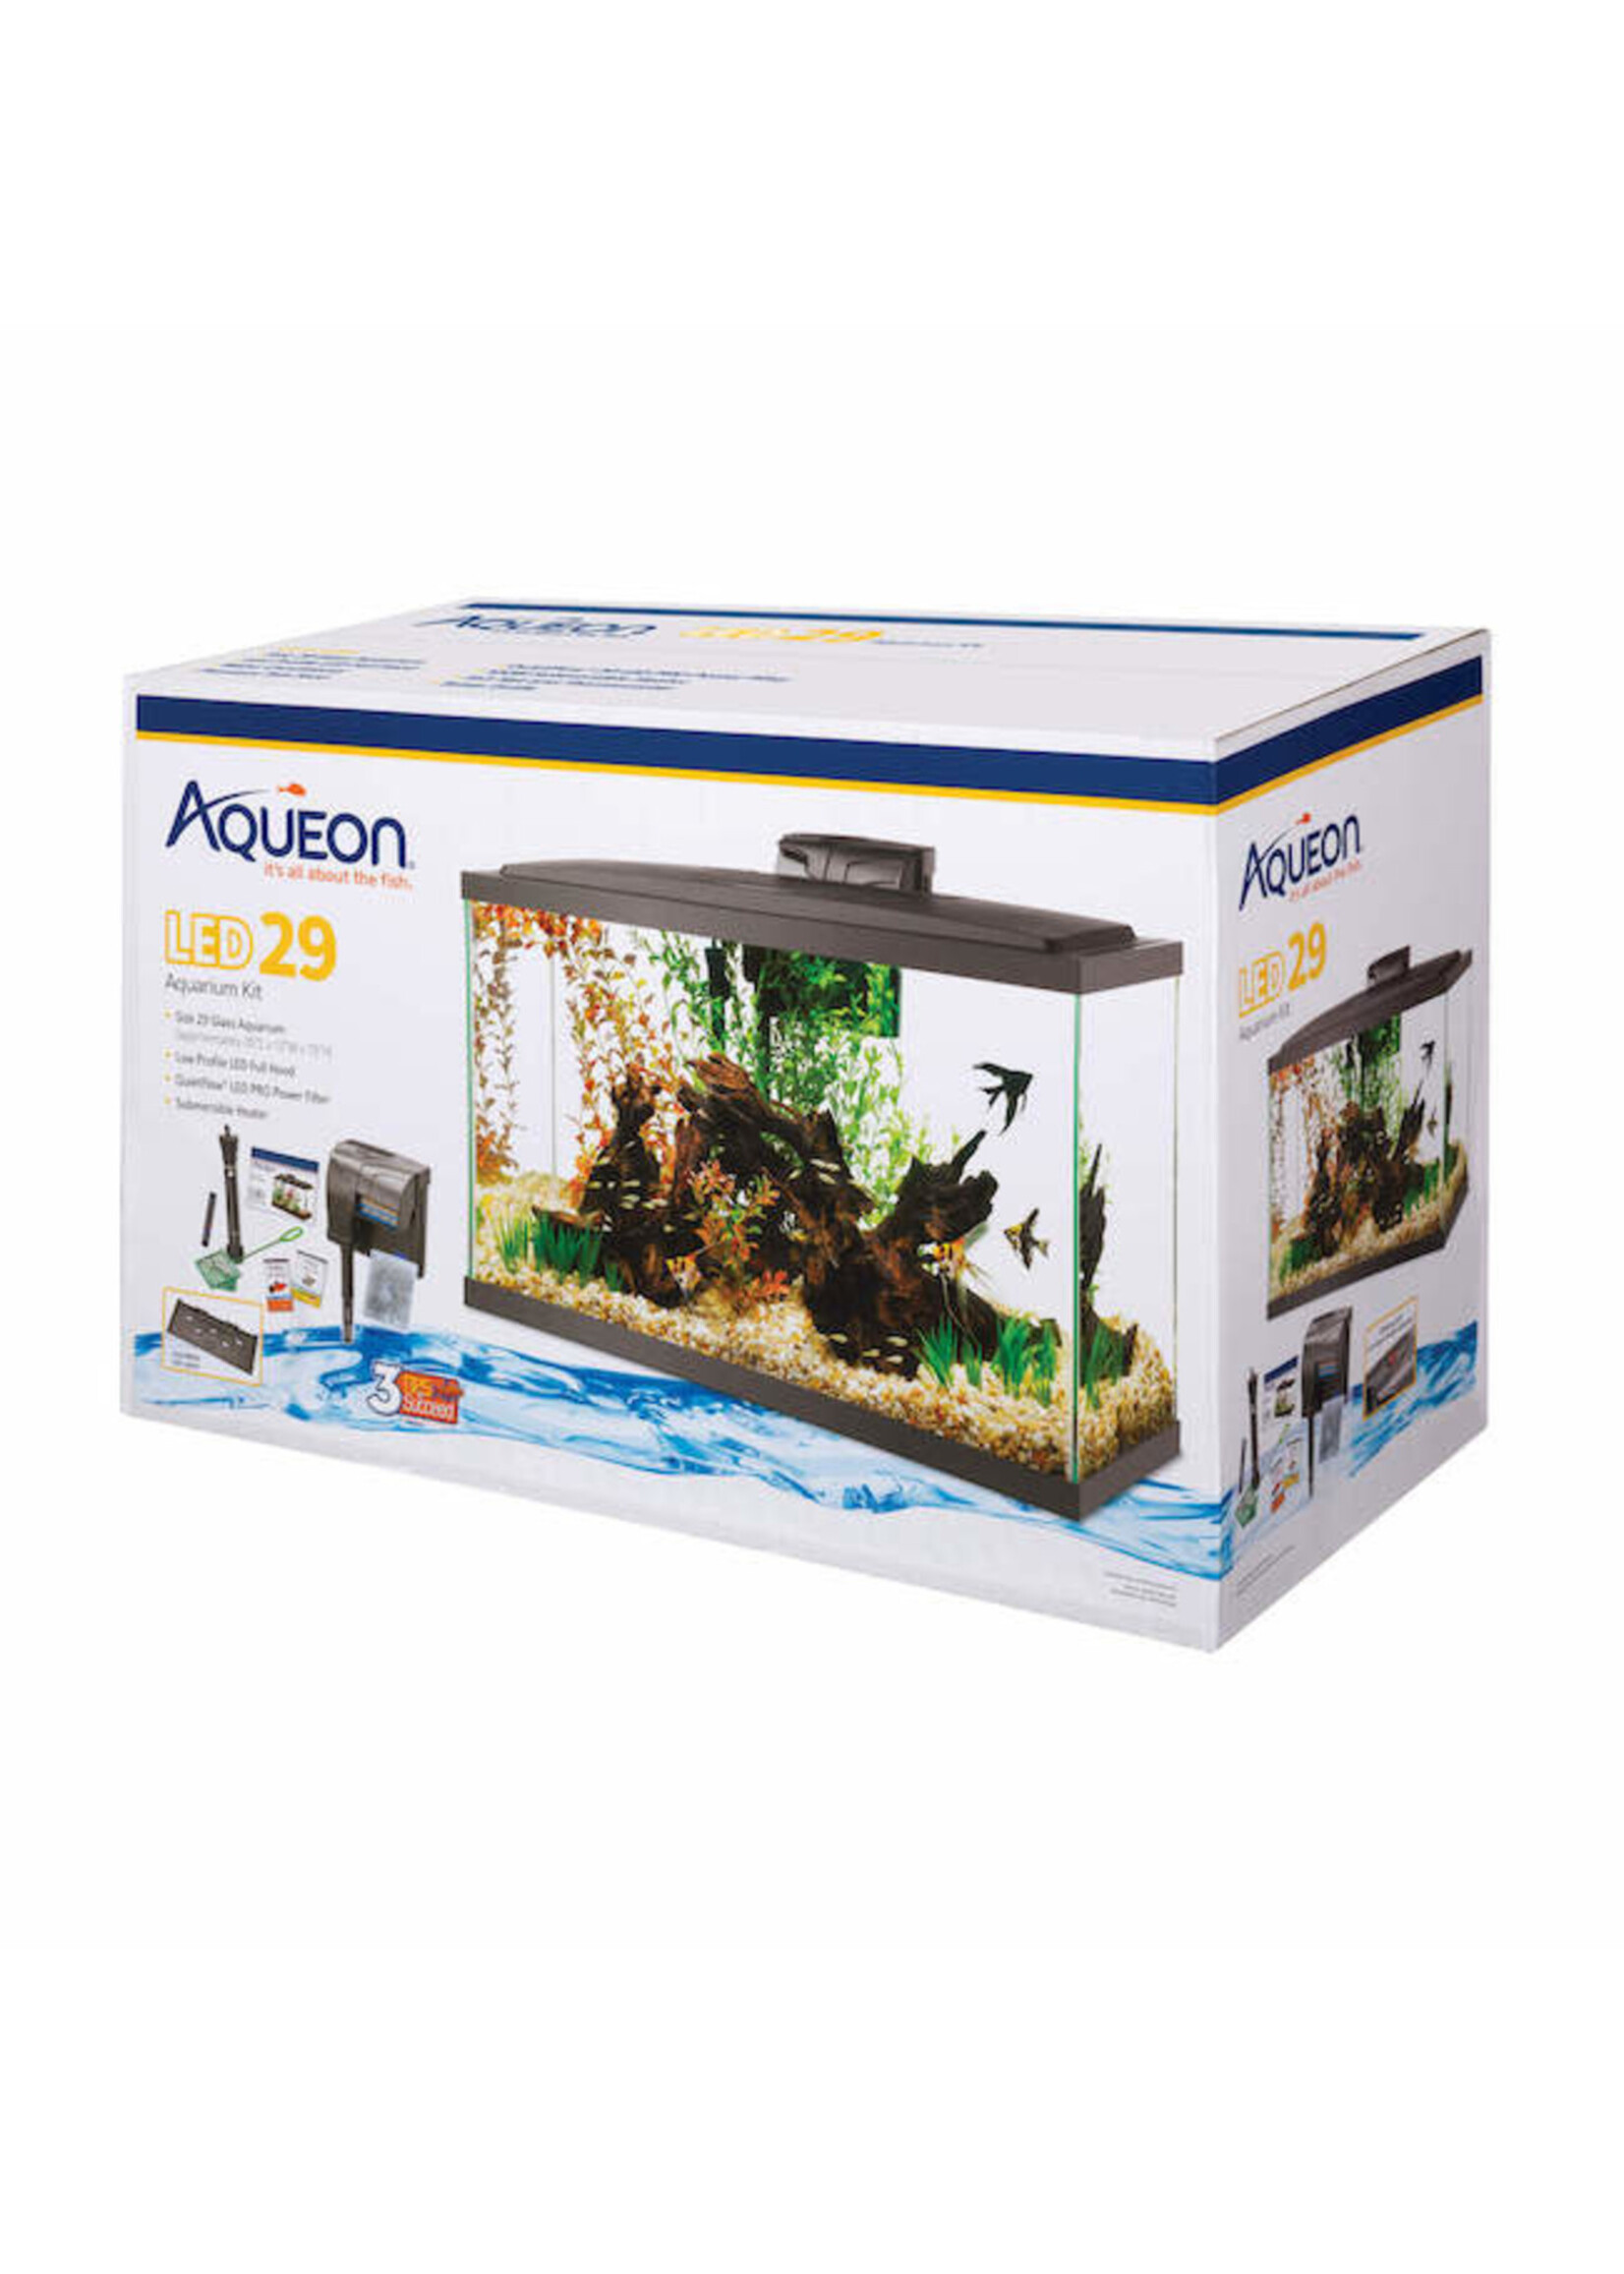 Aqueon Aqueon Bright LED Aquarium Kit